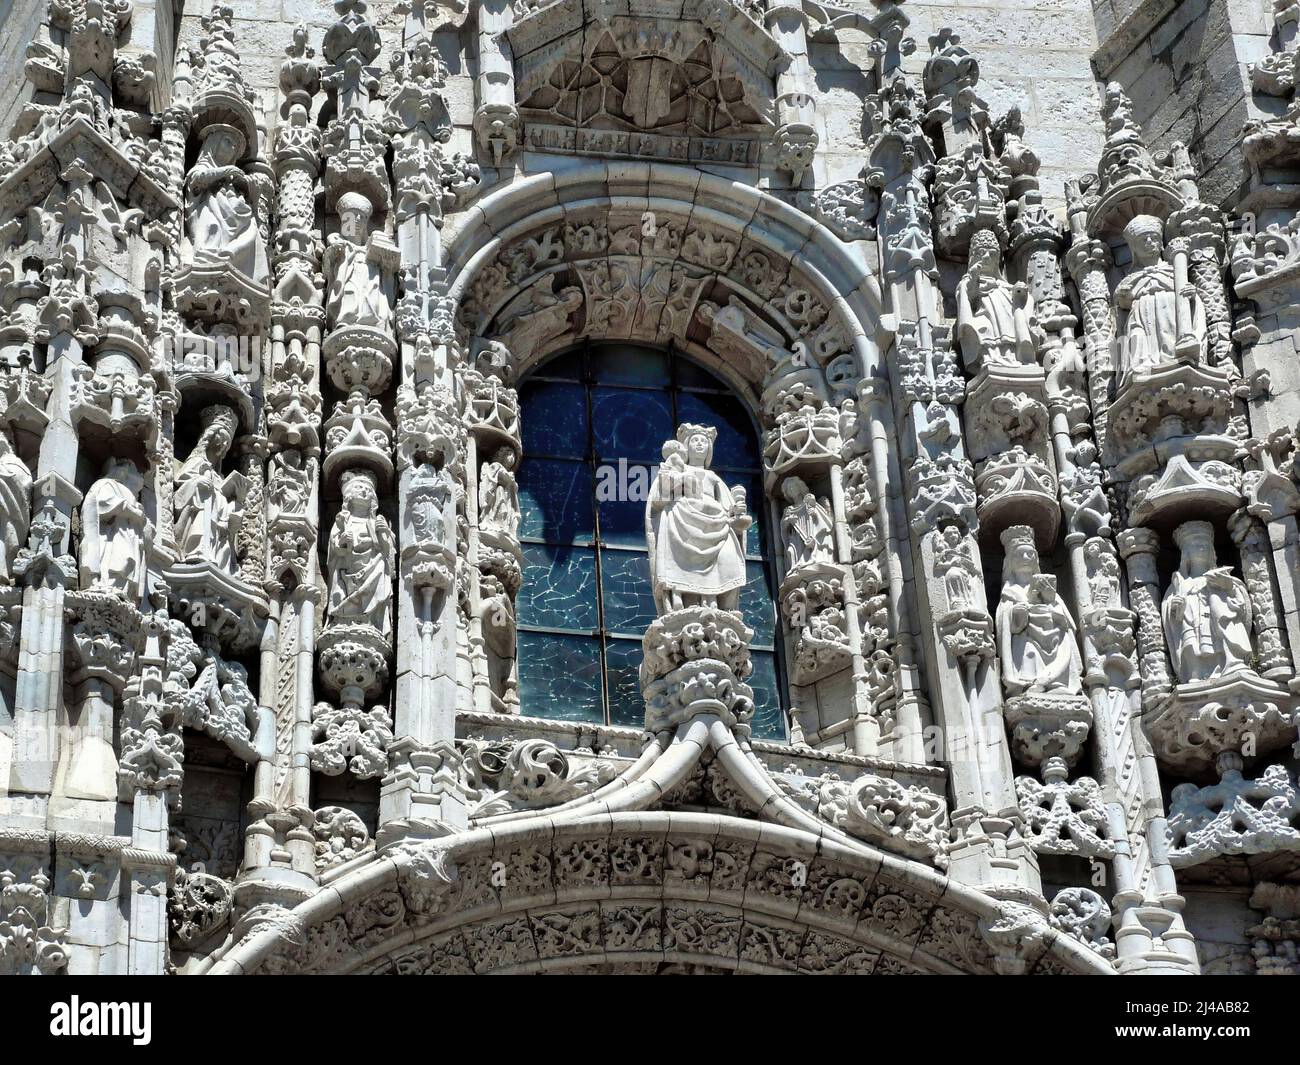 Einige architektonische Details des Klosters Jerónimos sind eines der wichtigsten Beispiele für den portugiesischen manuelinischen Architekturstil in Lissabon. Stockfoto